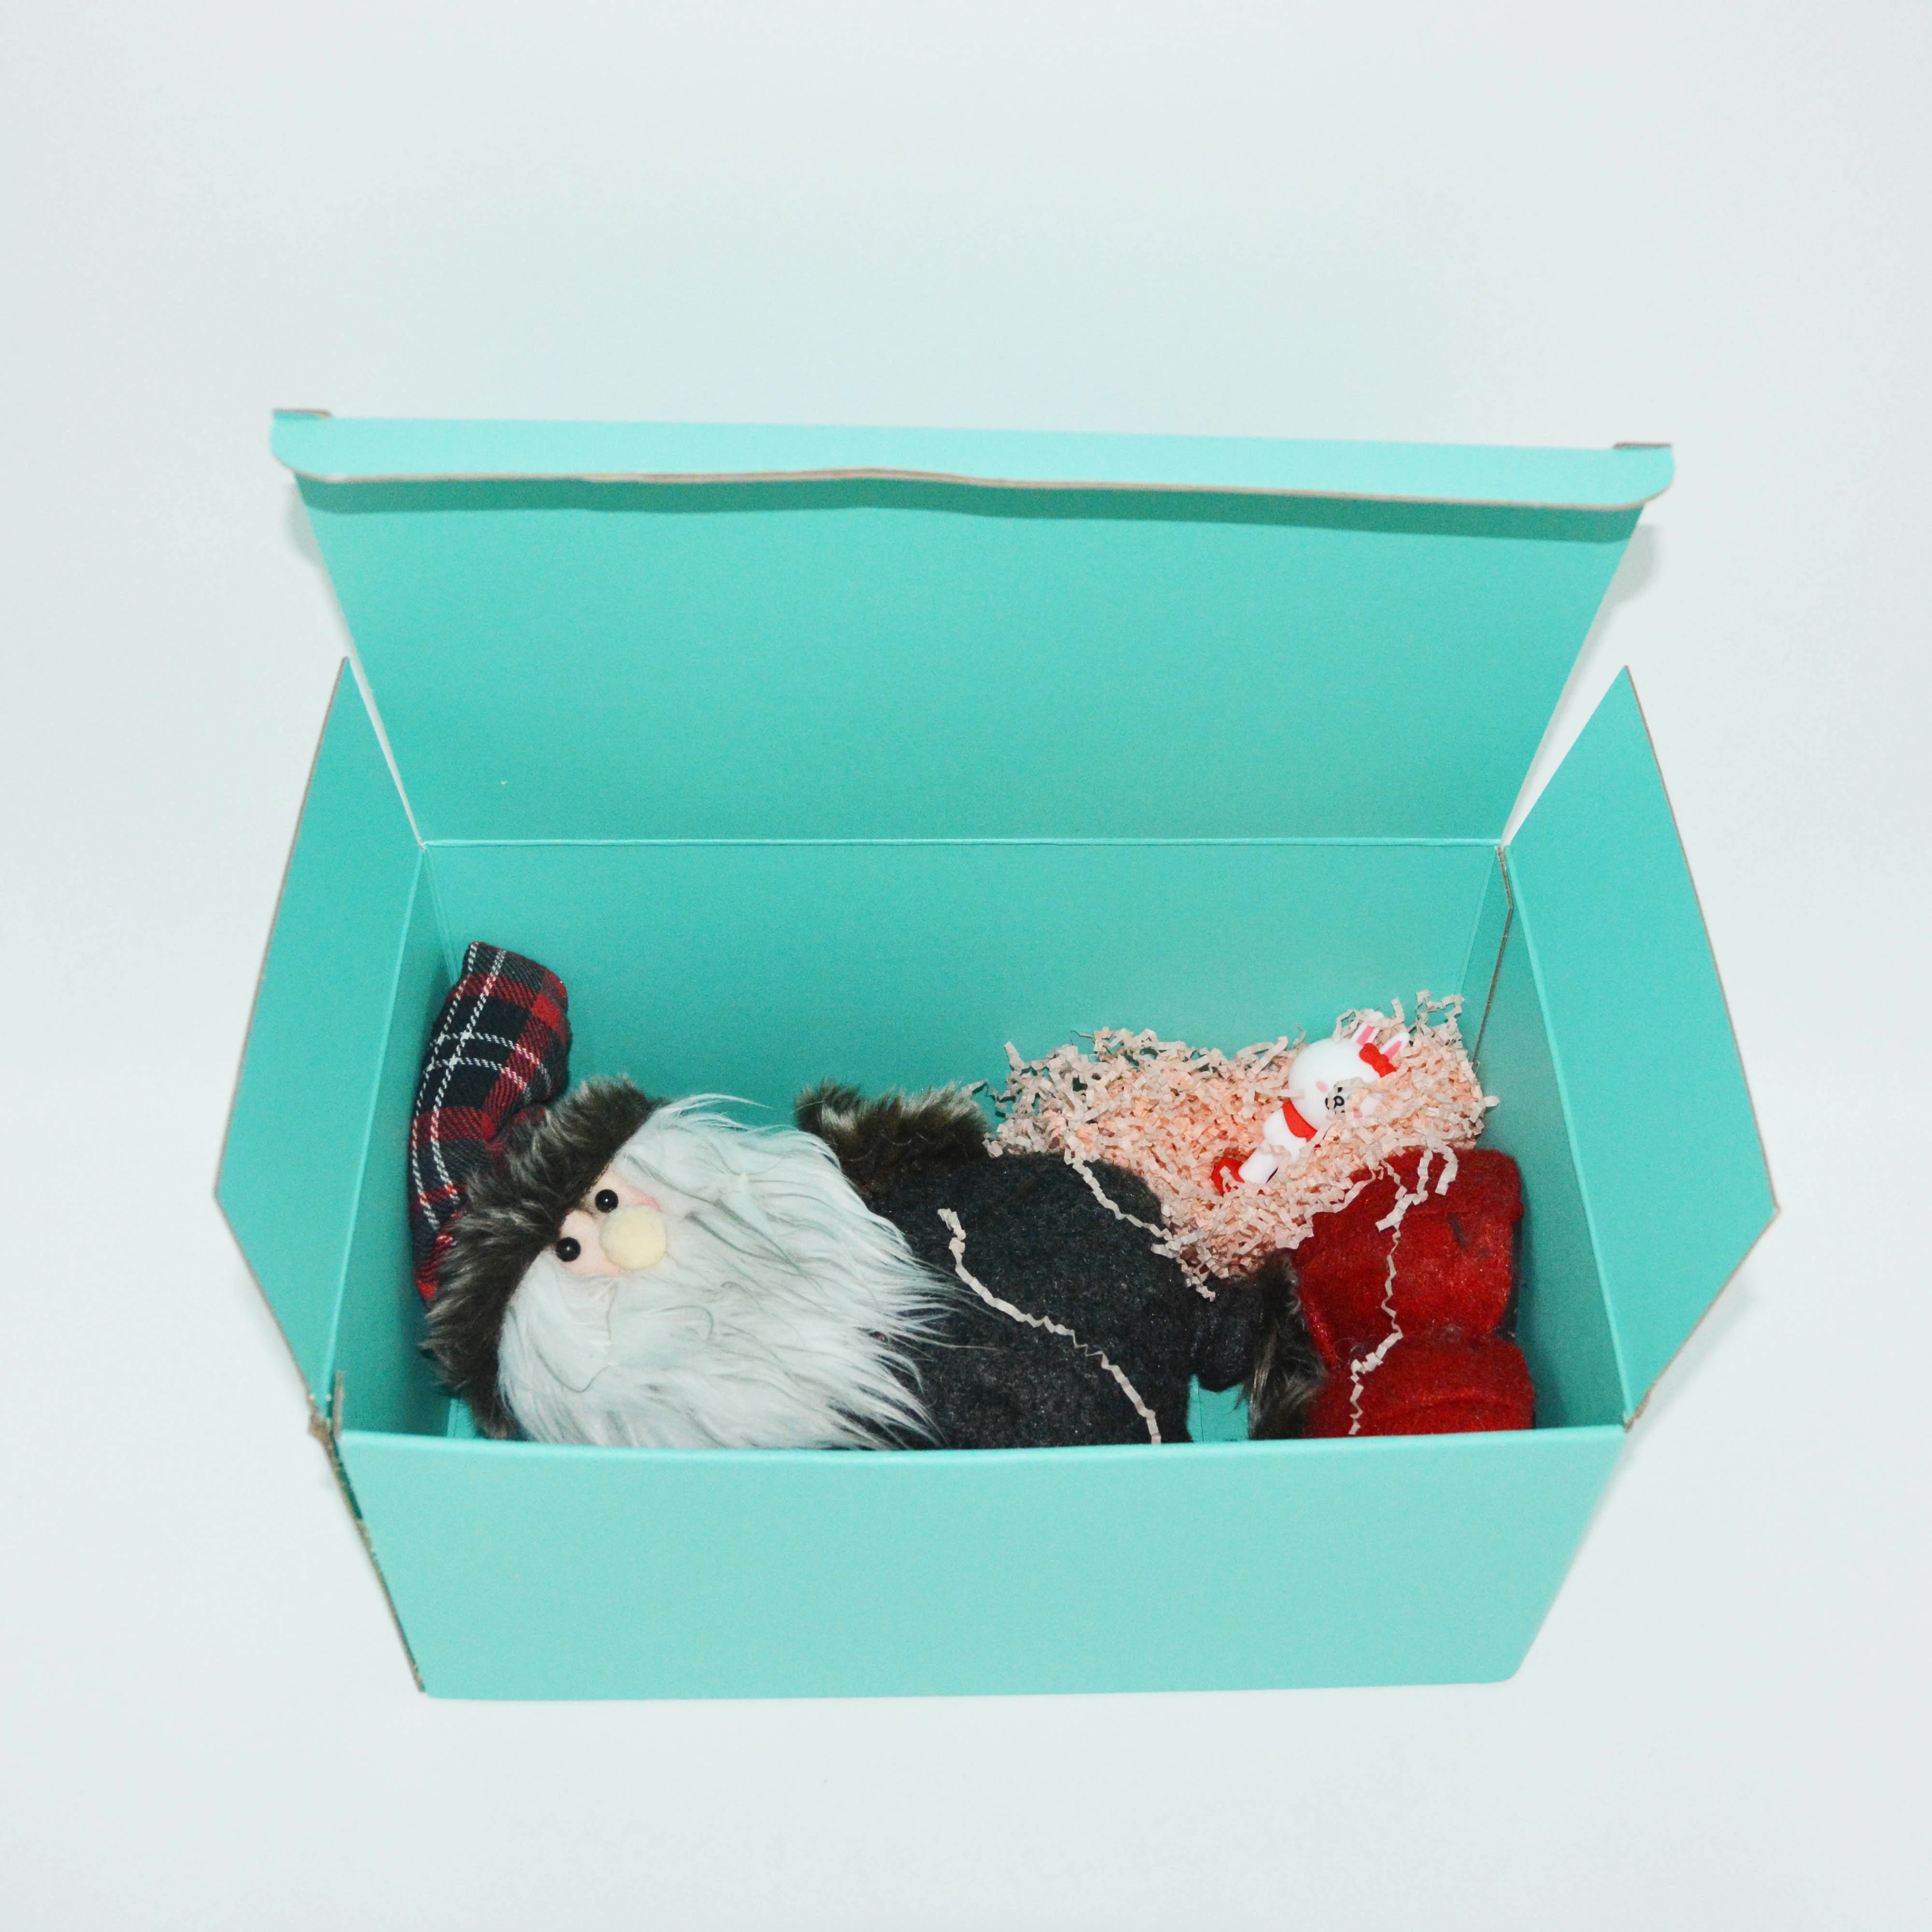 Luxus Blau Design Well Mailing Karton Weihnachten Spielzeug geschenk Lagerung Verpackung Box